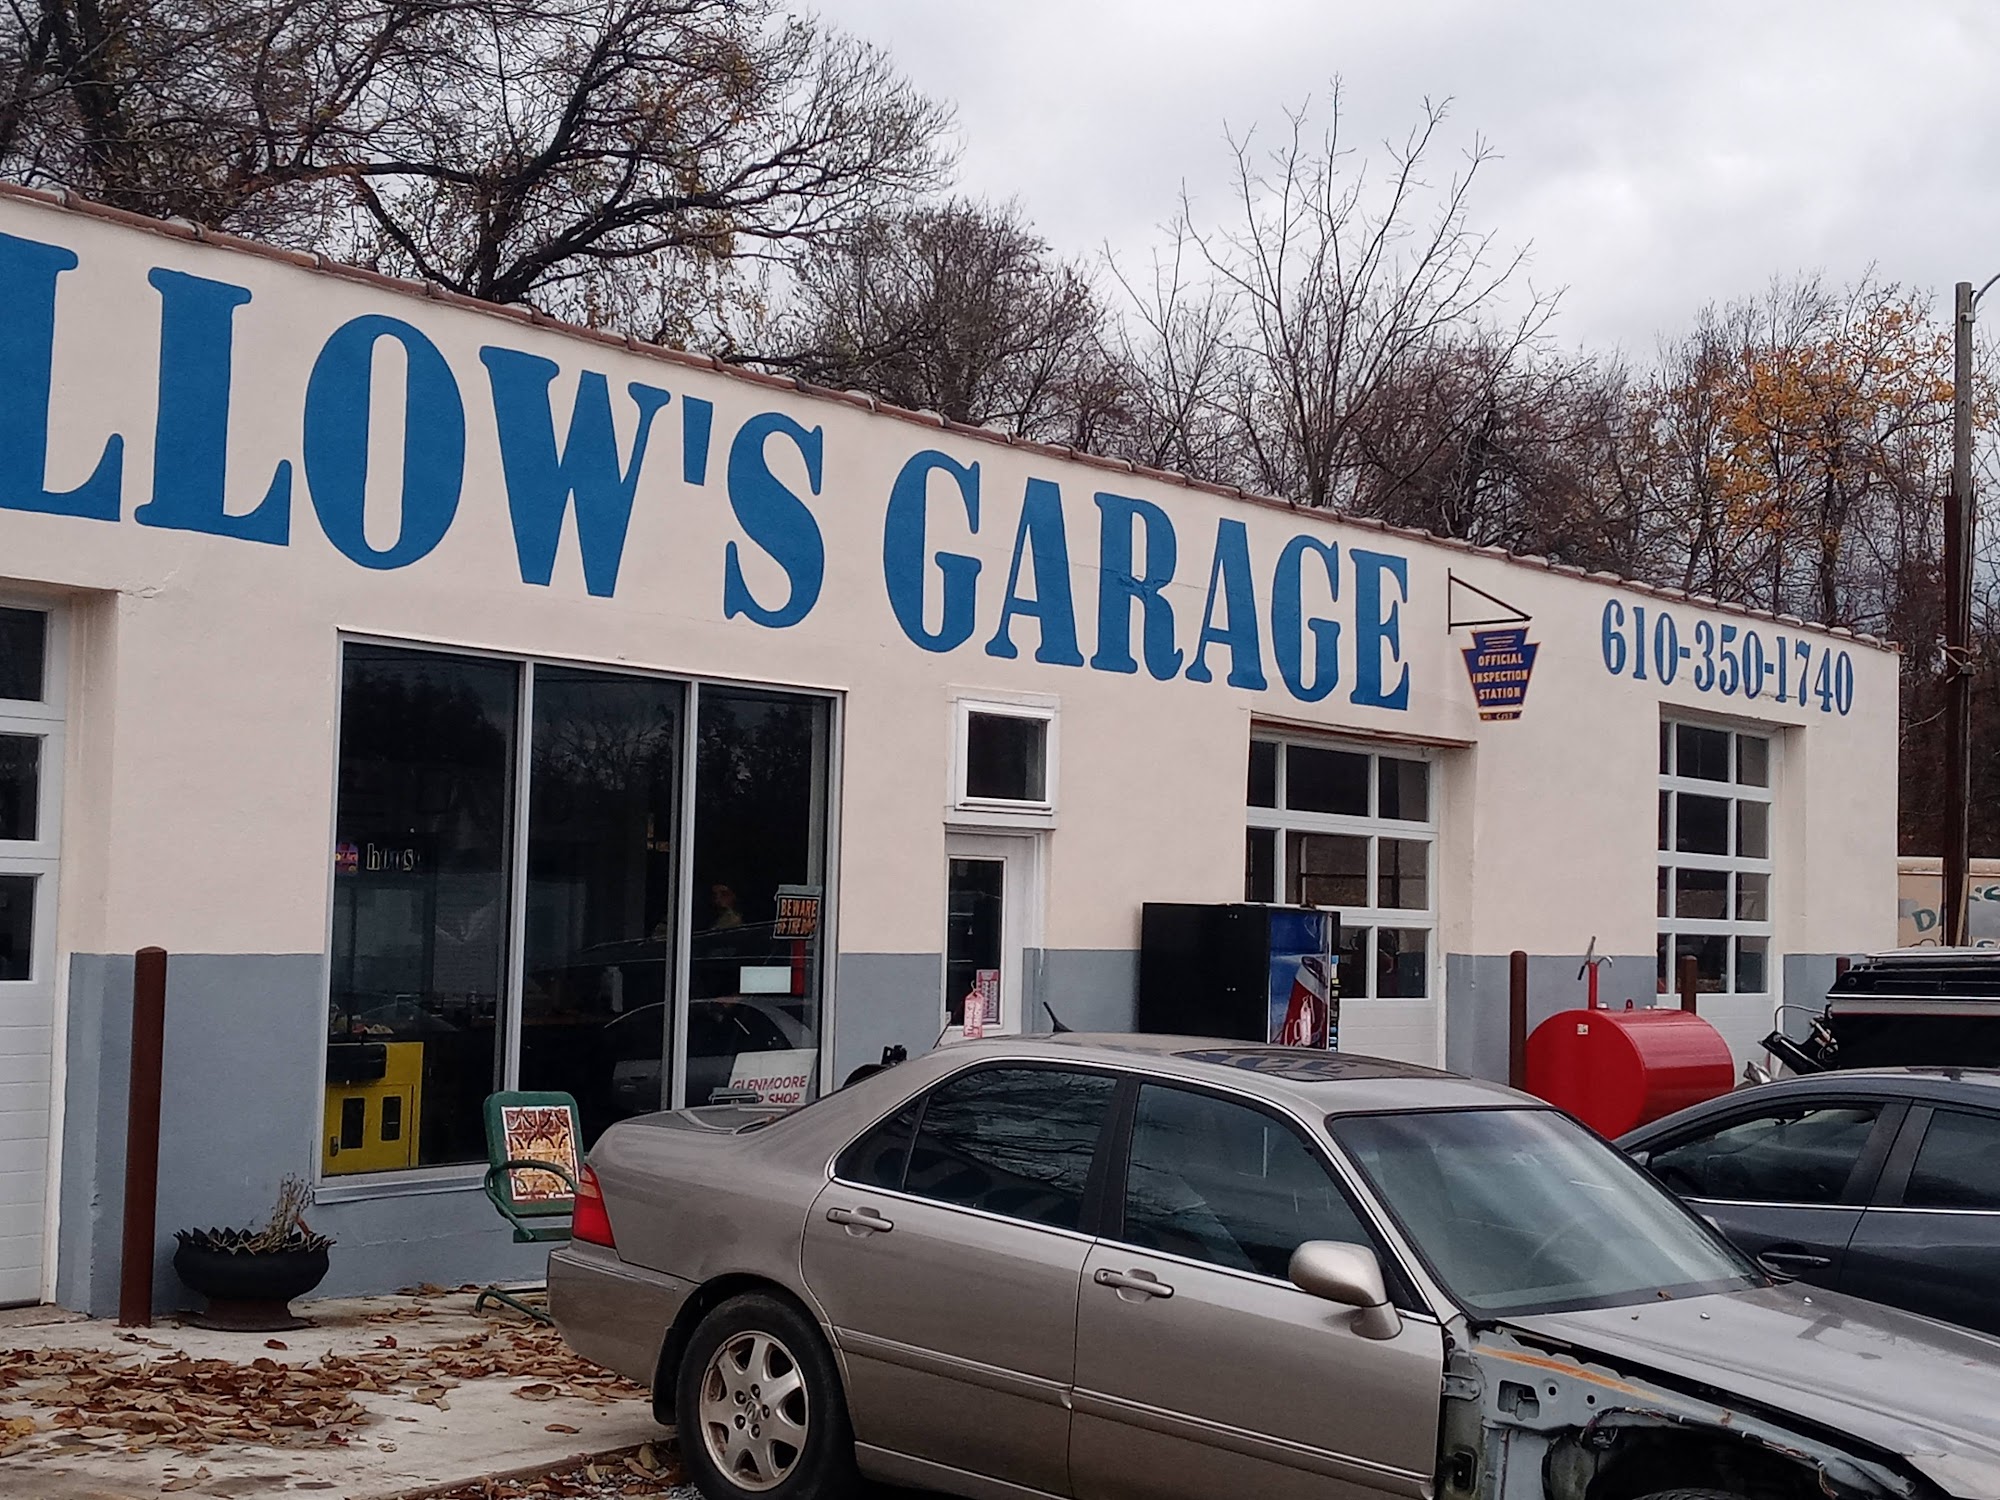 Goodfellow's Garage